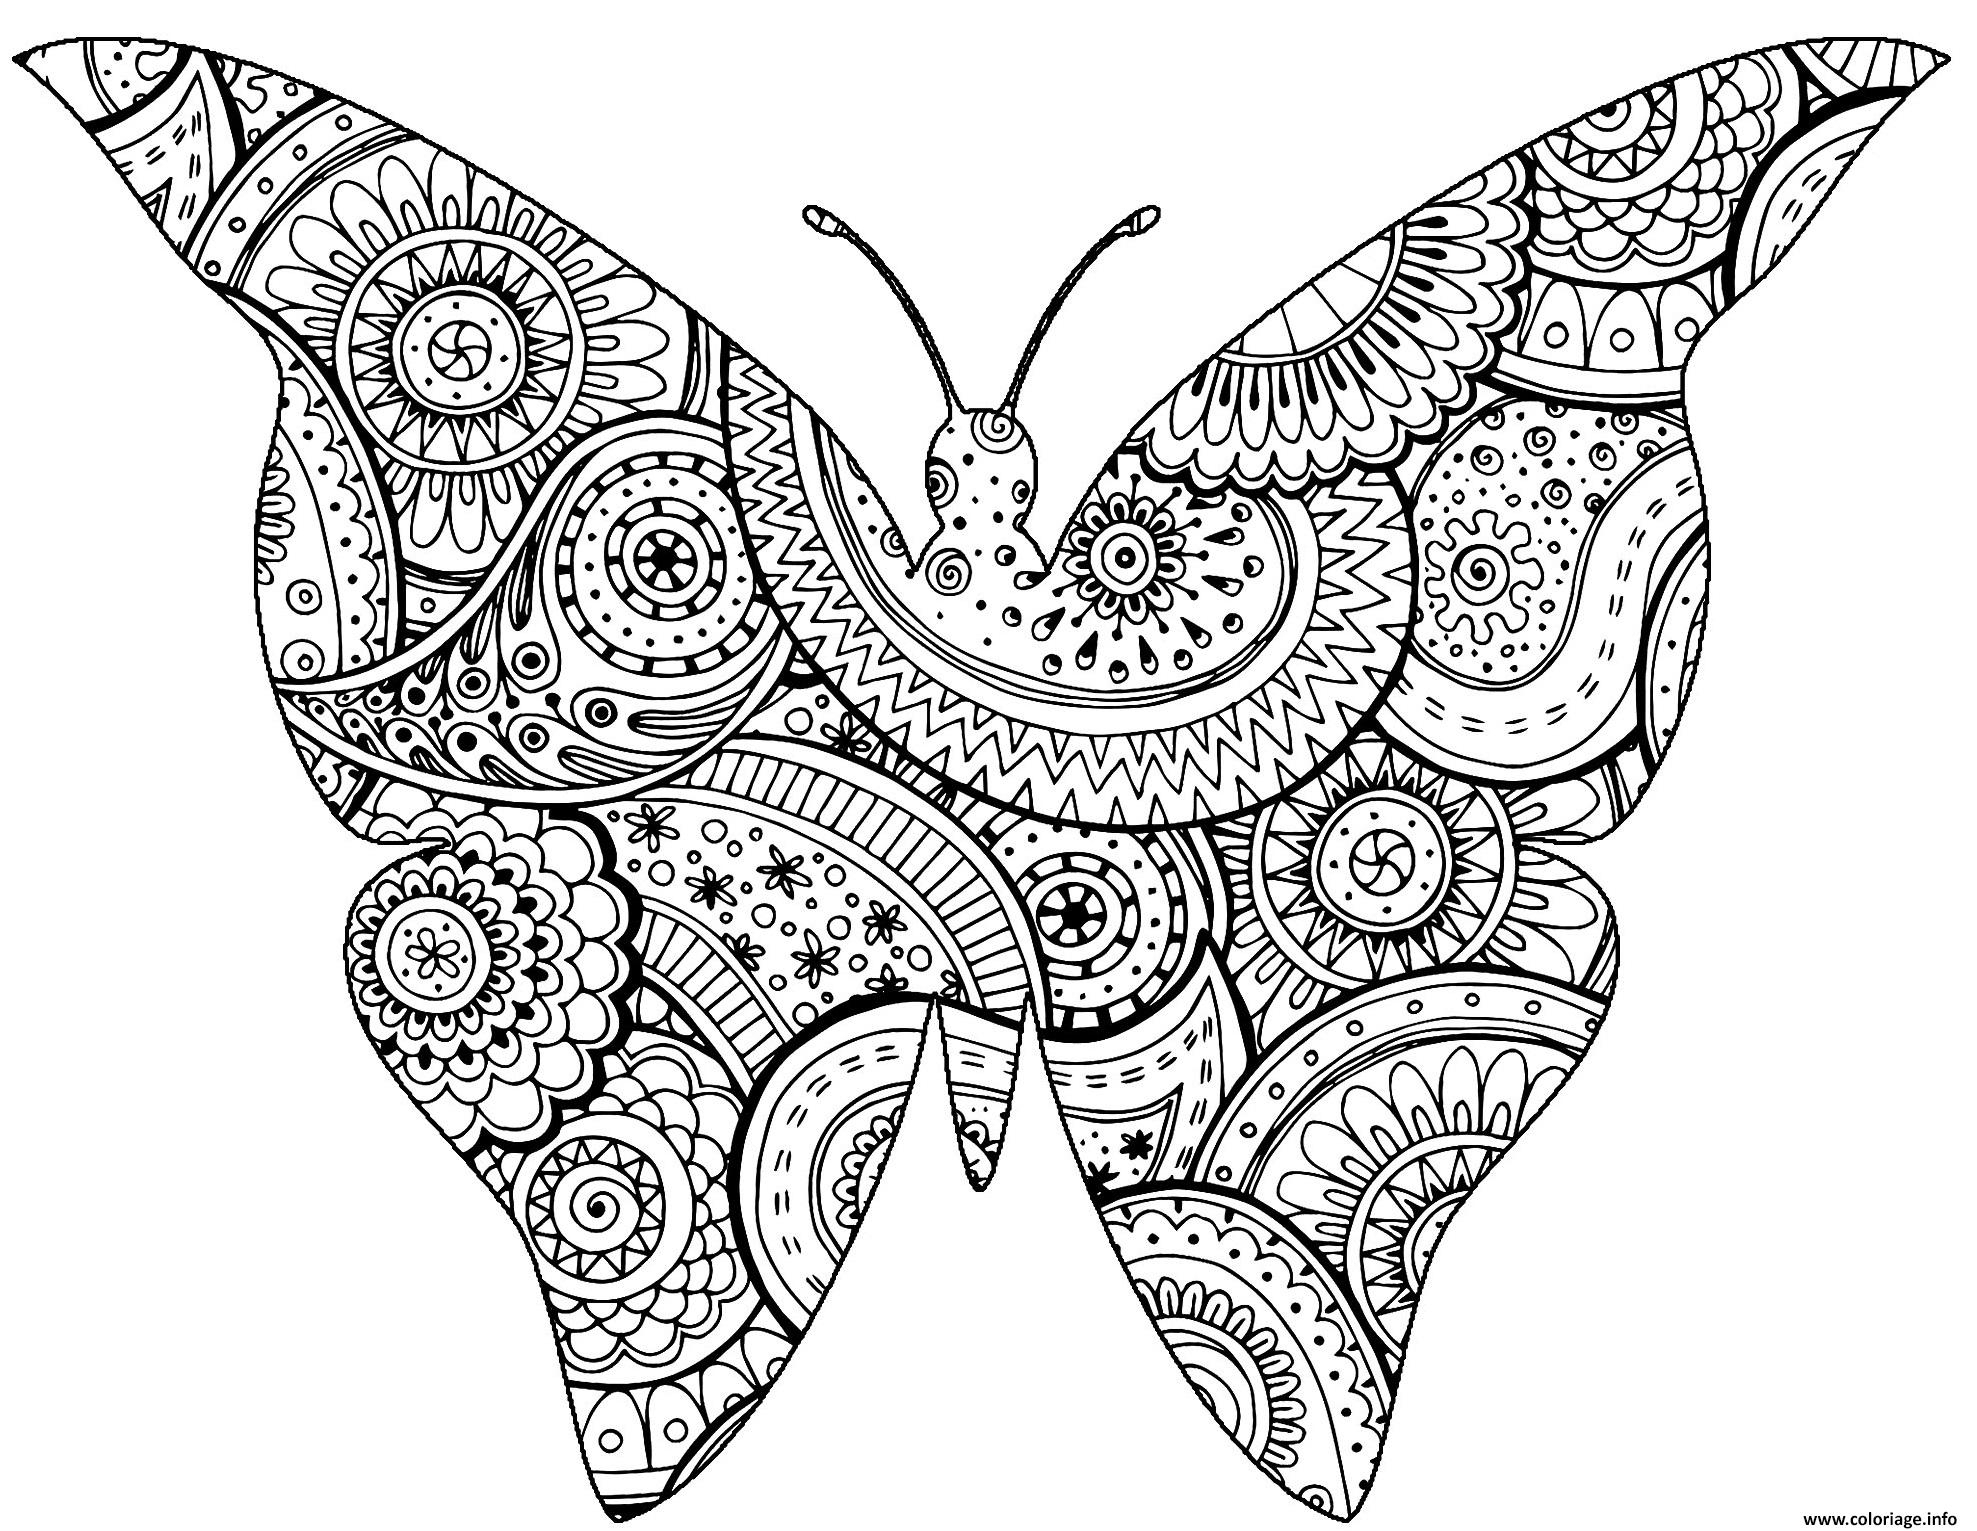 Dessin A Imprimer Papillon Gratuit - Primanyc destiné Image Papillon À Imprimer